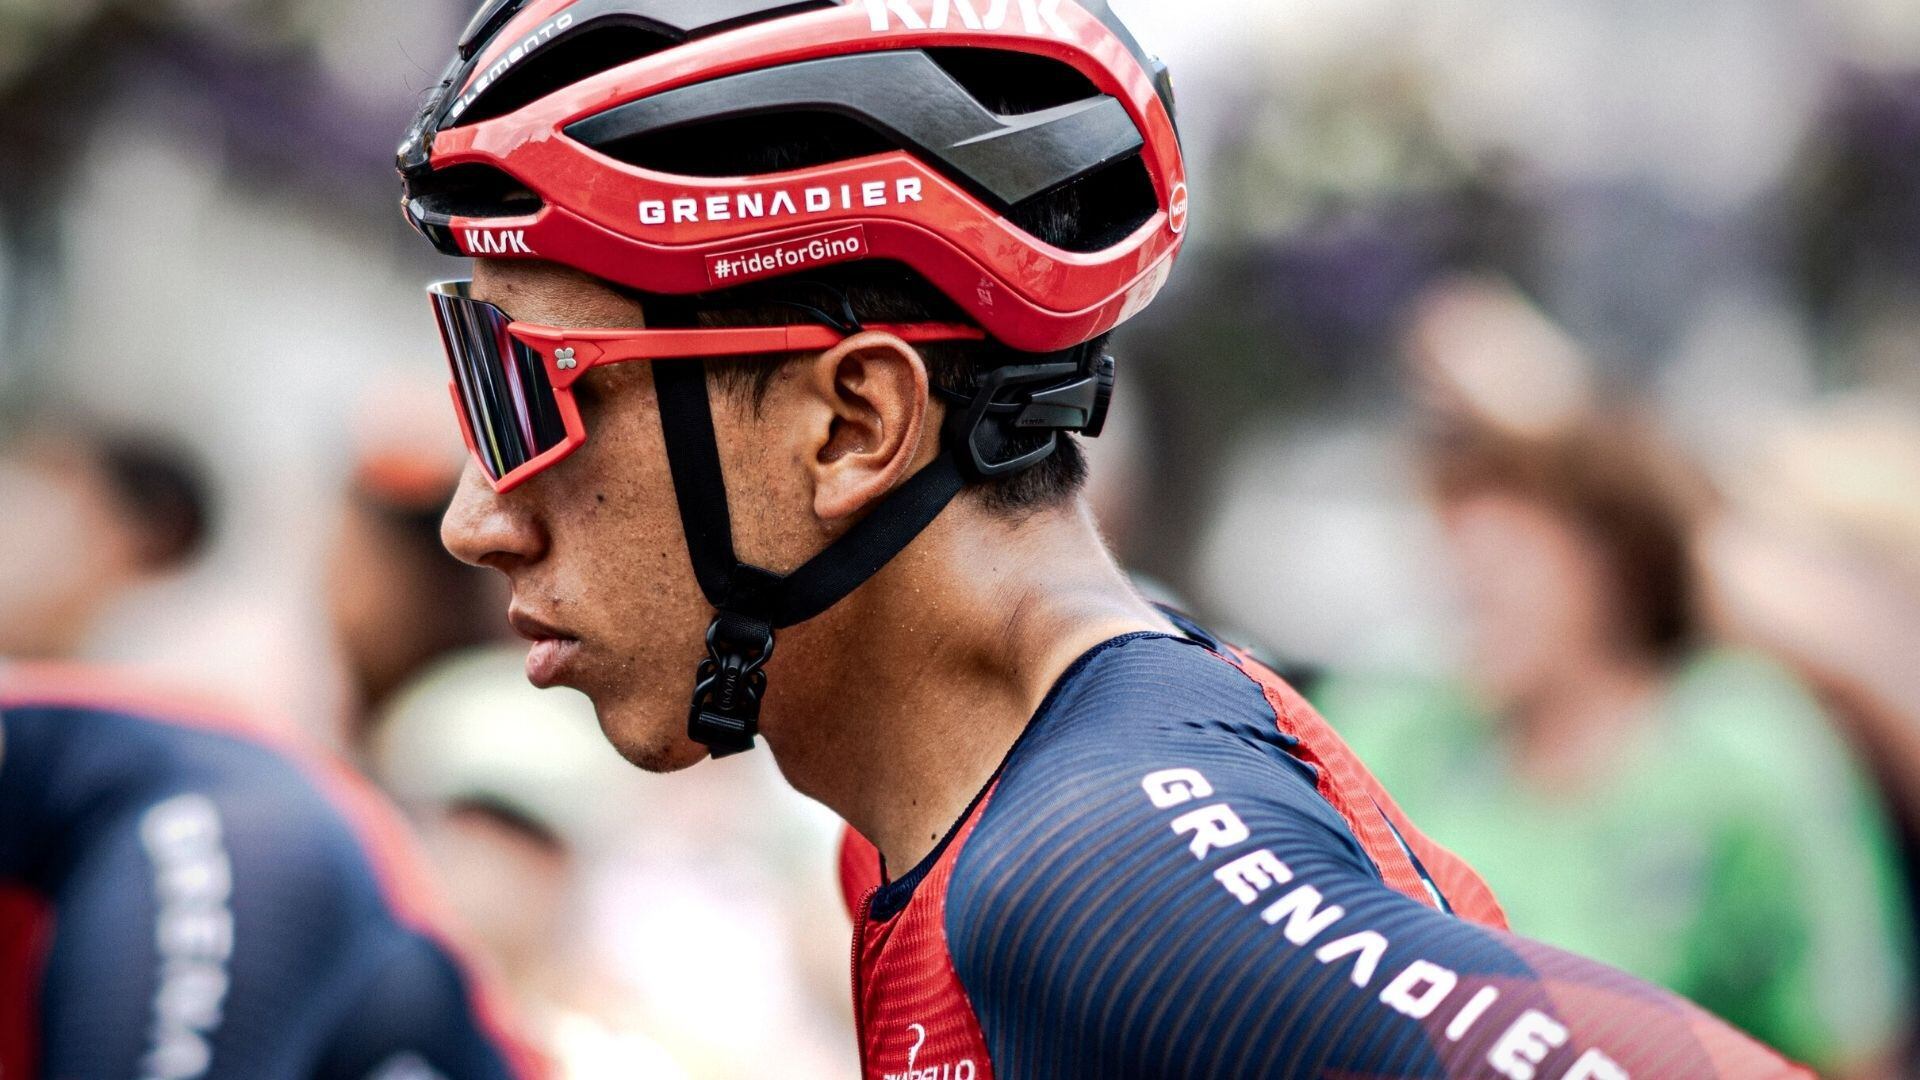 El corredor colombiano está siendo clave en su equipo durante el Tour de Francia. Foto: INEOS Grenadiers